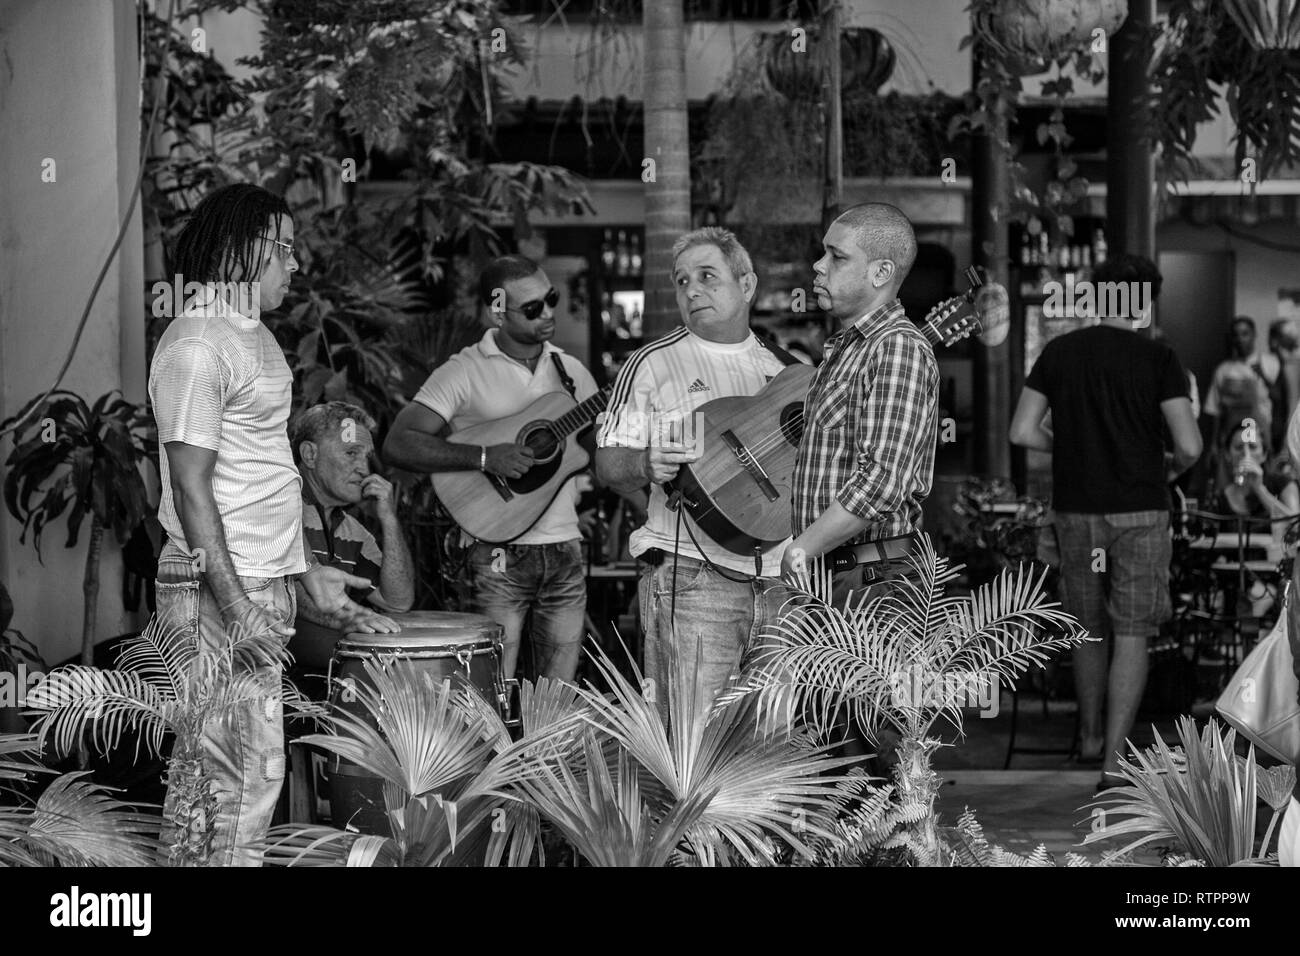 L'Avana, Cuba - 06 Gennaio 2013: una vista delle strade della città con il popolo cubano. Musicisti di strada prendere una pausa. Foto Stock